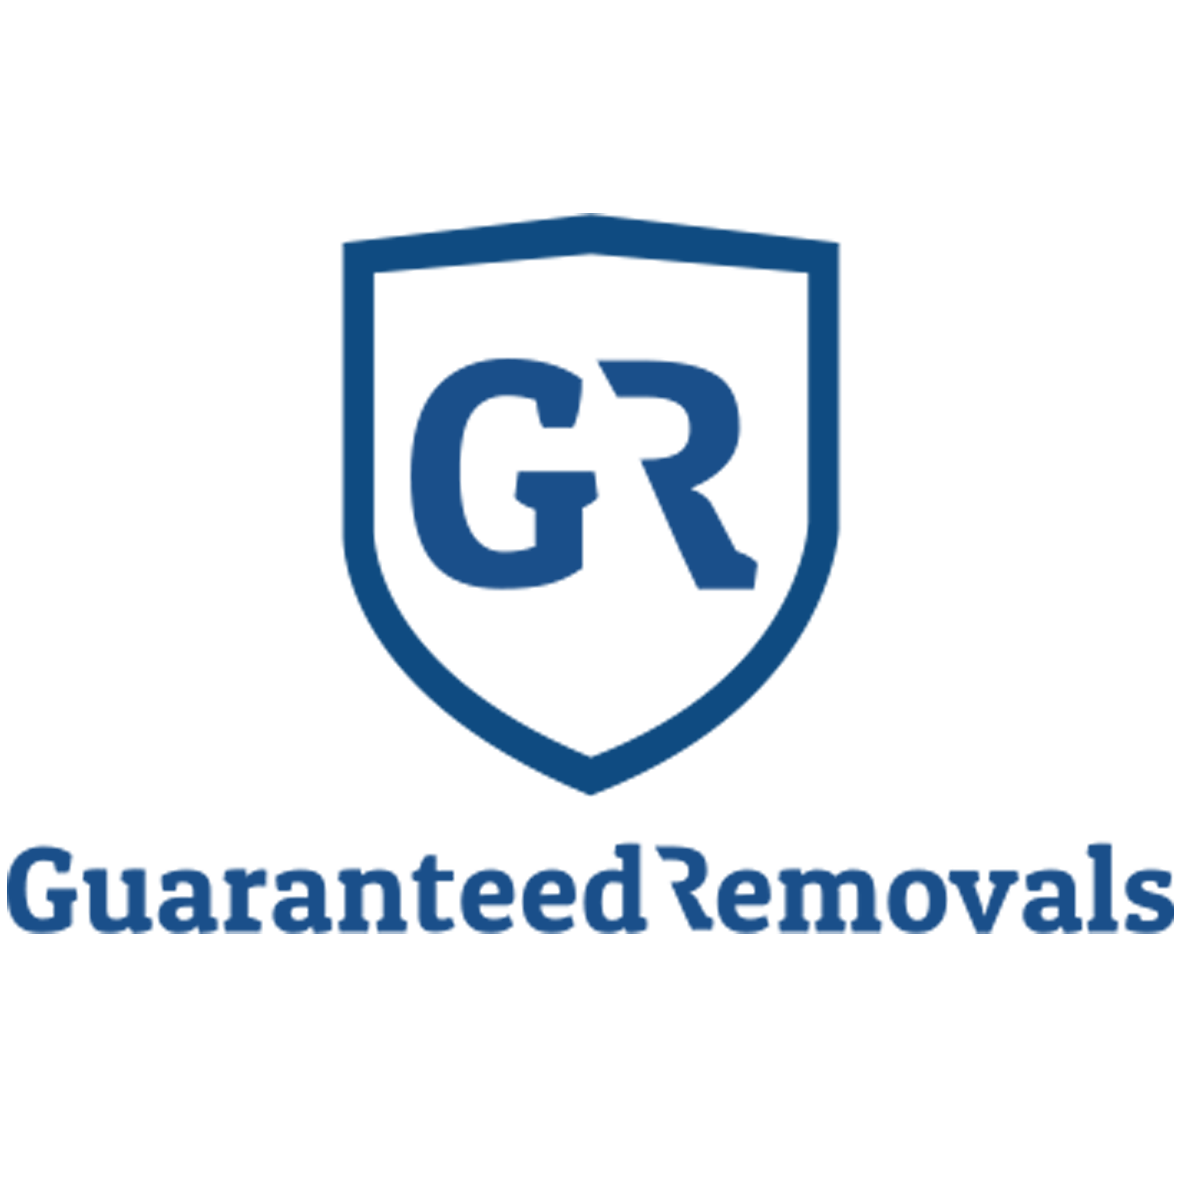 Guaranteed Removals